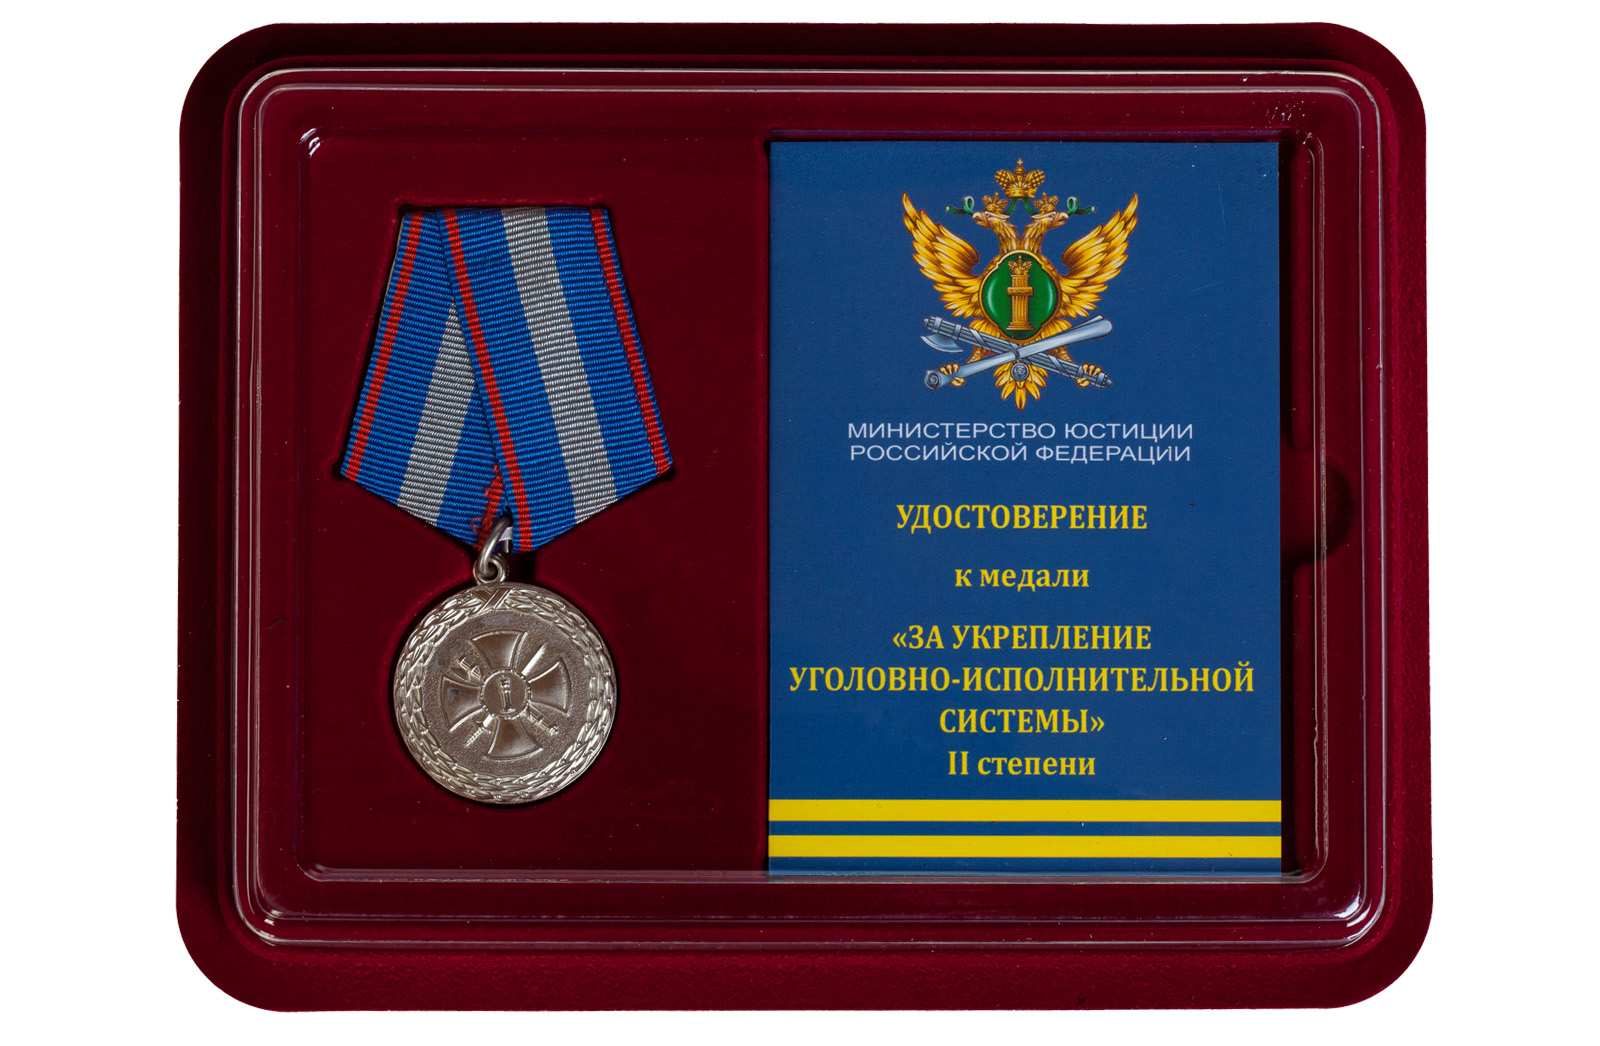 Купить медаль Минюста России За укрепление уголовно-исполнительной системы 2 степени в подарок